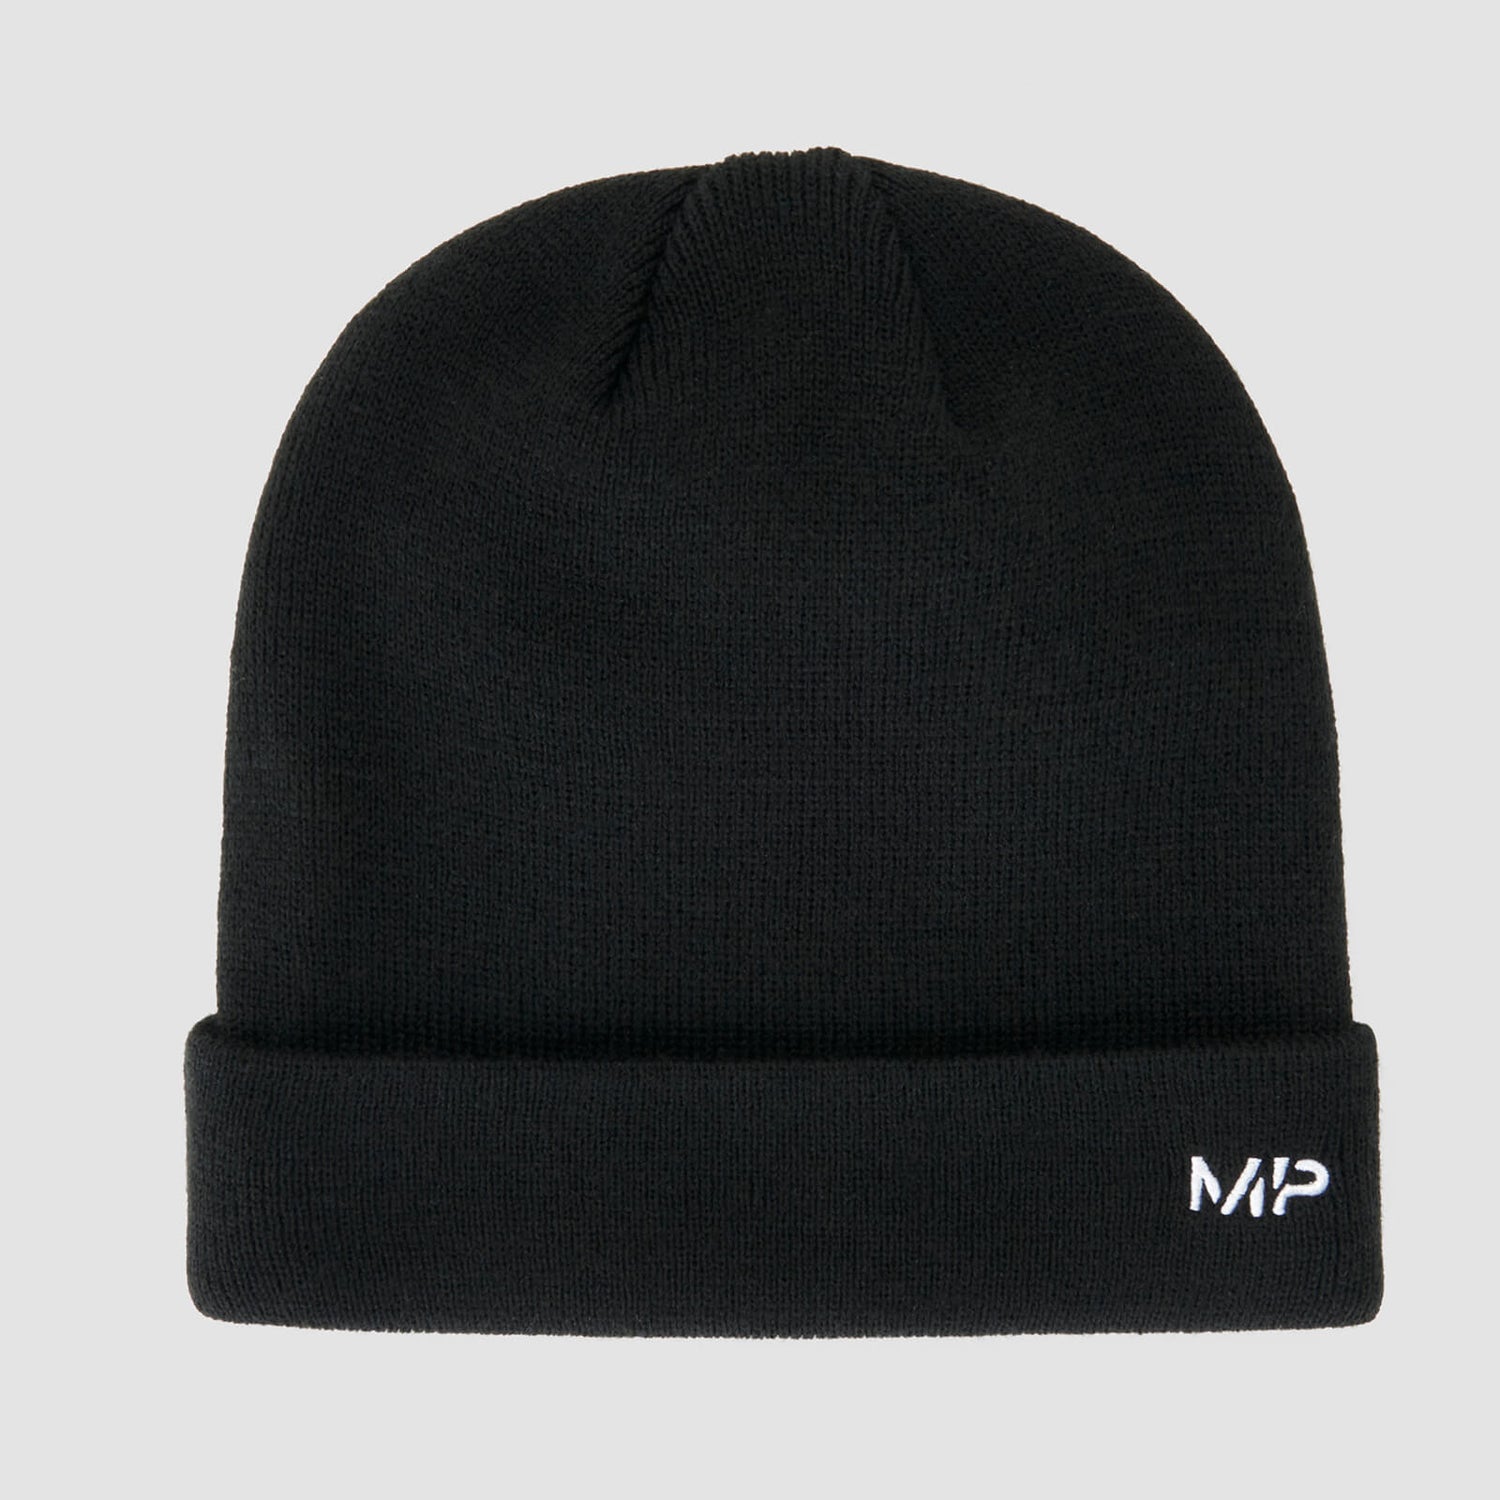 MP Beanie Hat - черный/белый